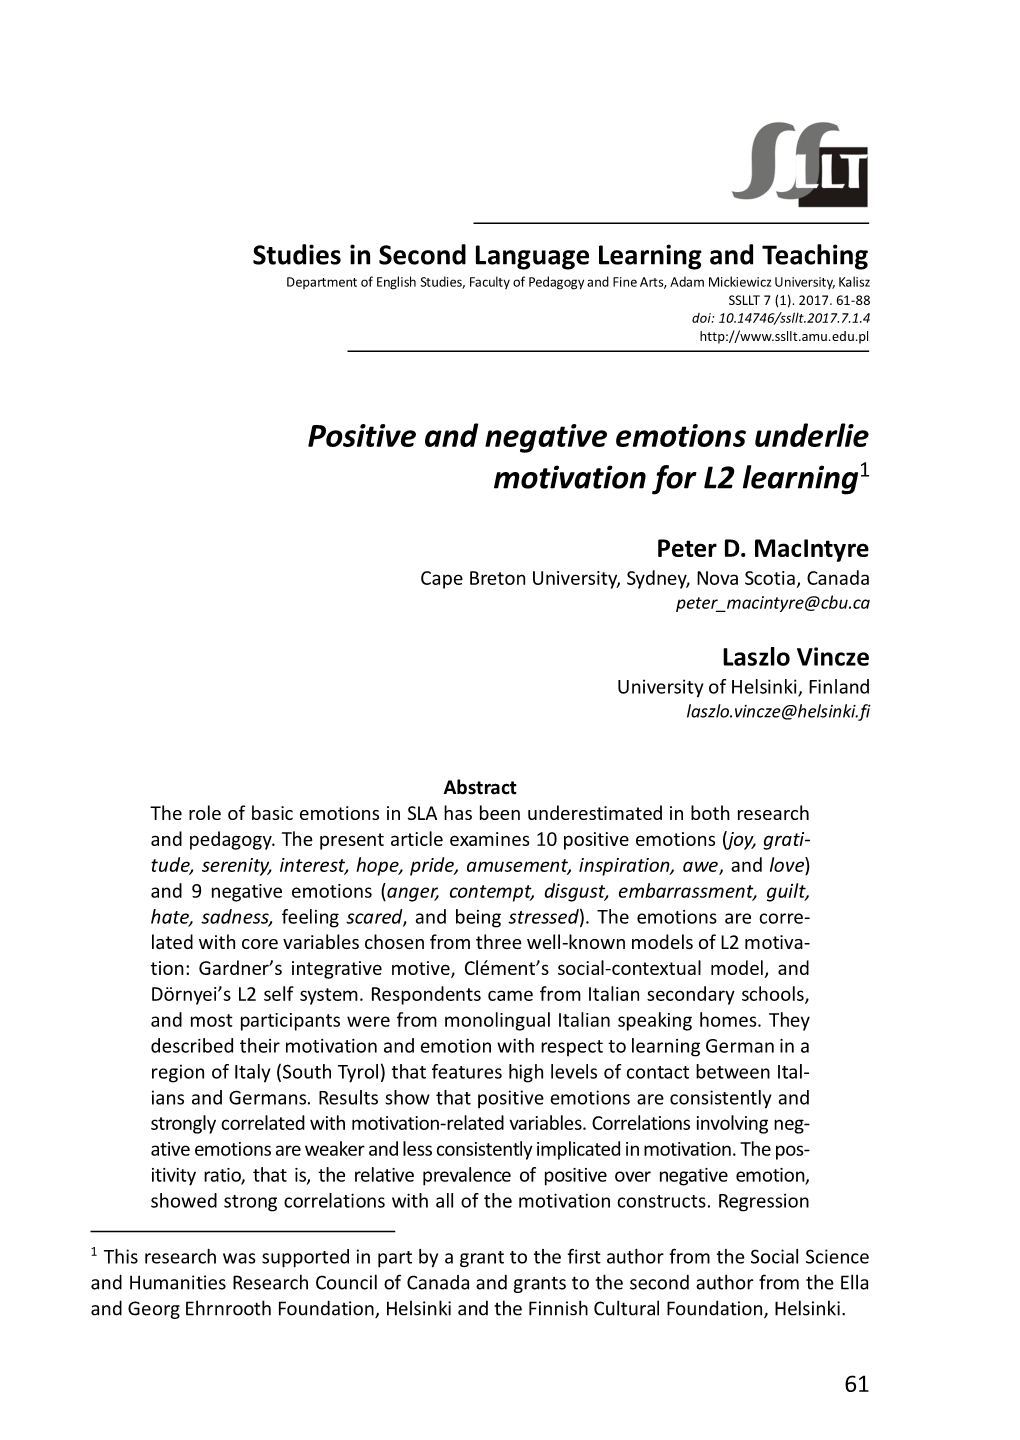 Positive and Negative Emotions Underlie Motivation for L2 Learning1